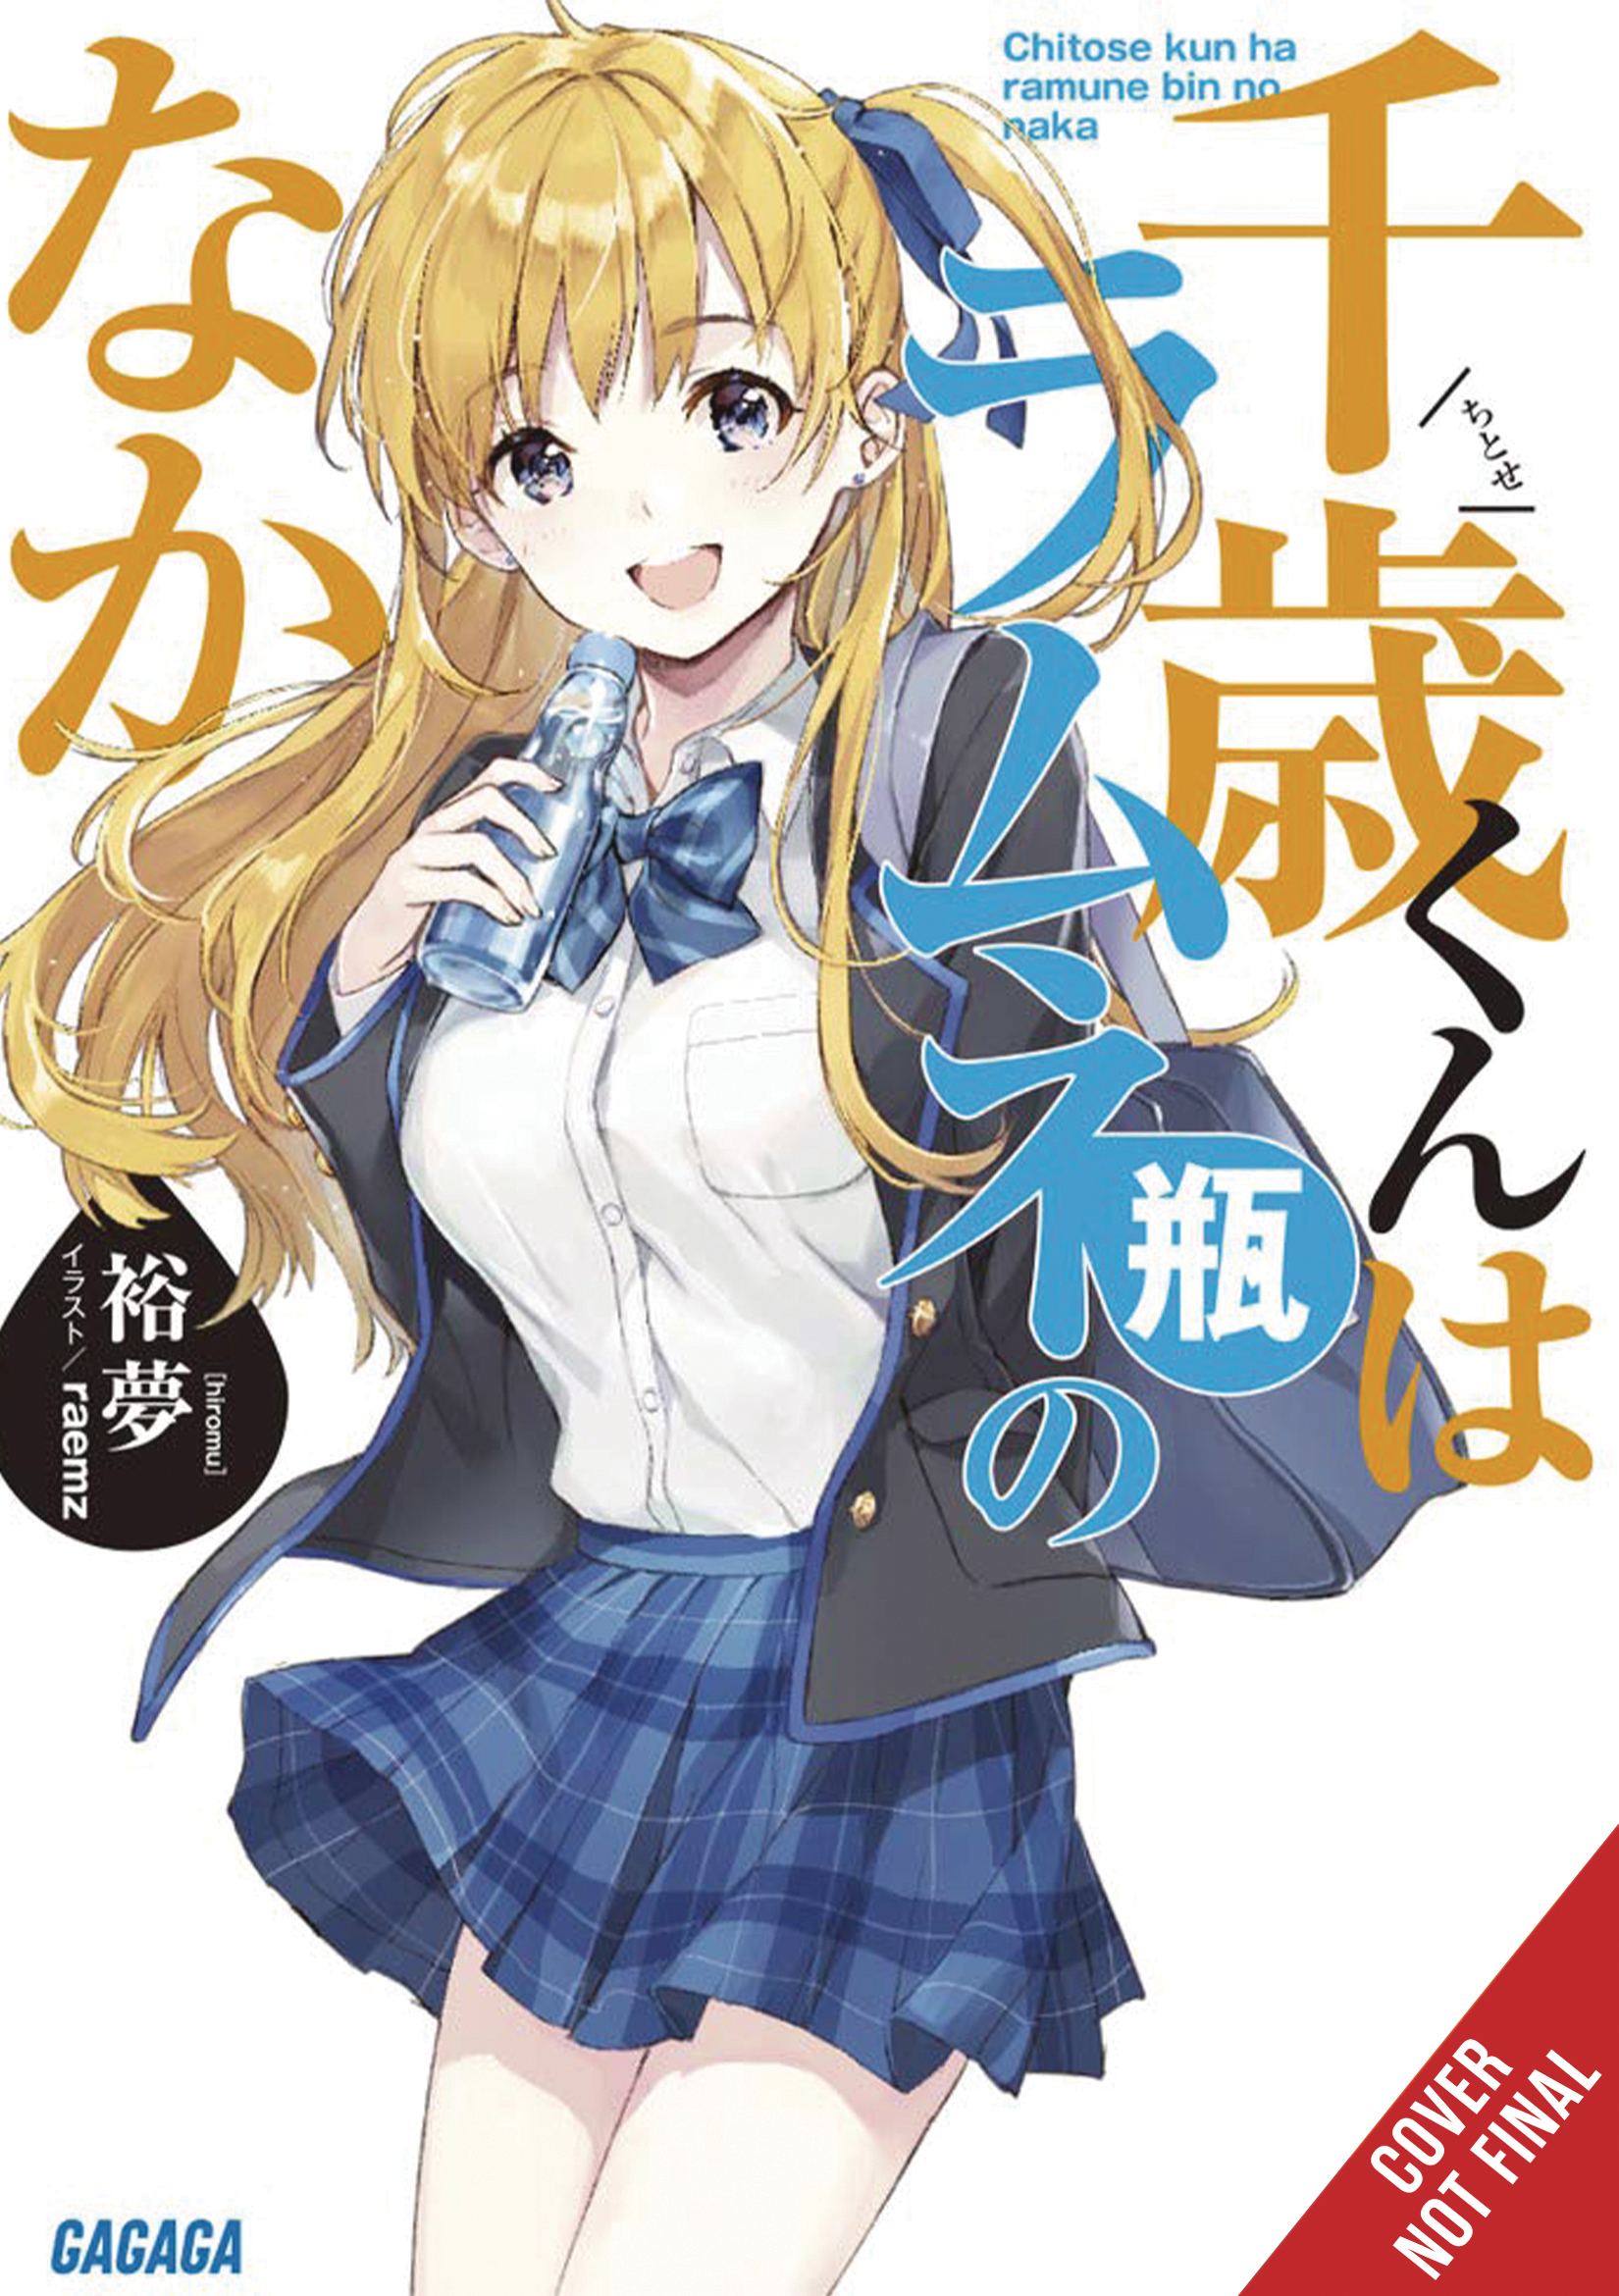 Chitose Kun Ramune Bottle Light Novel Volume 1